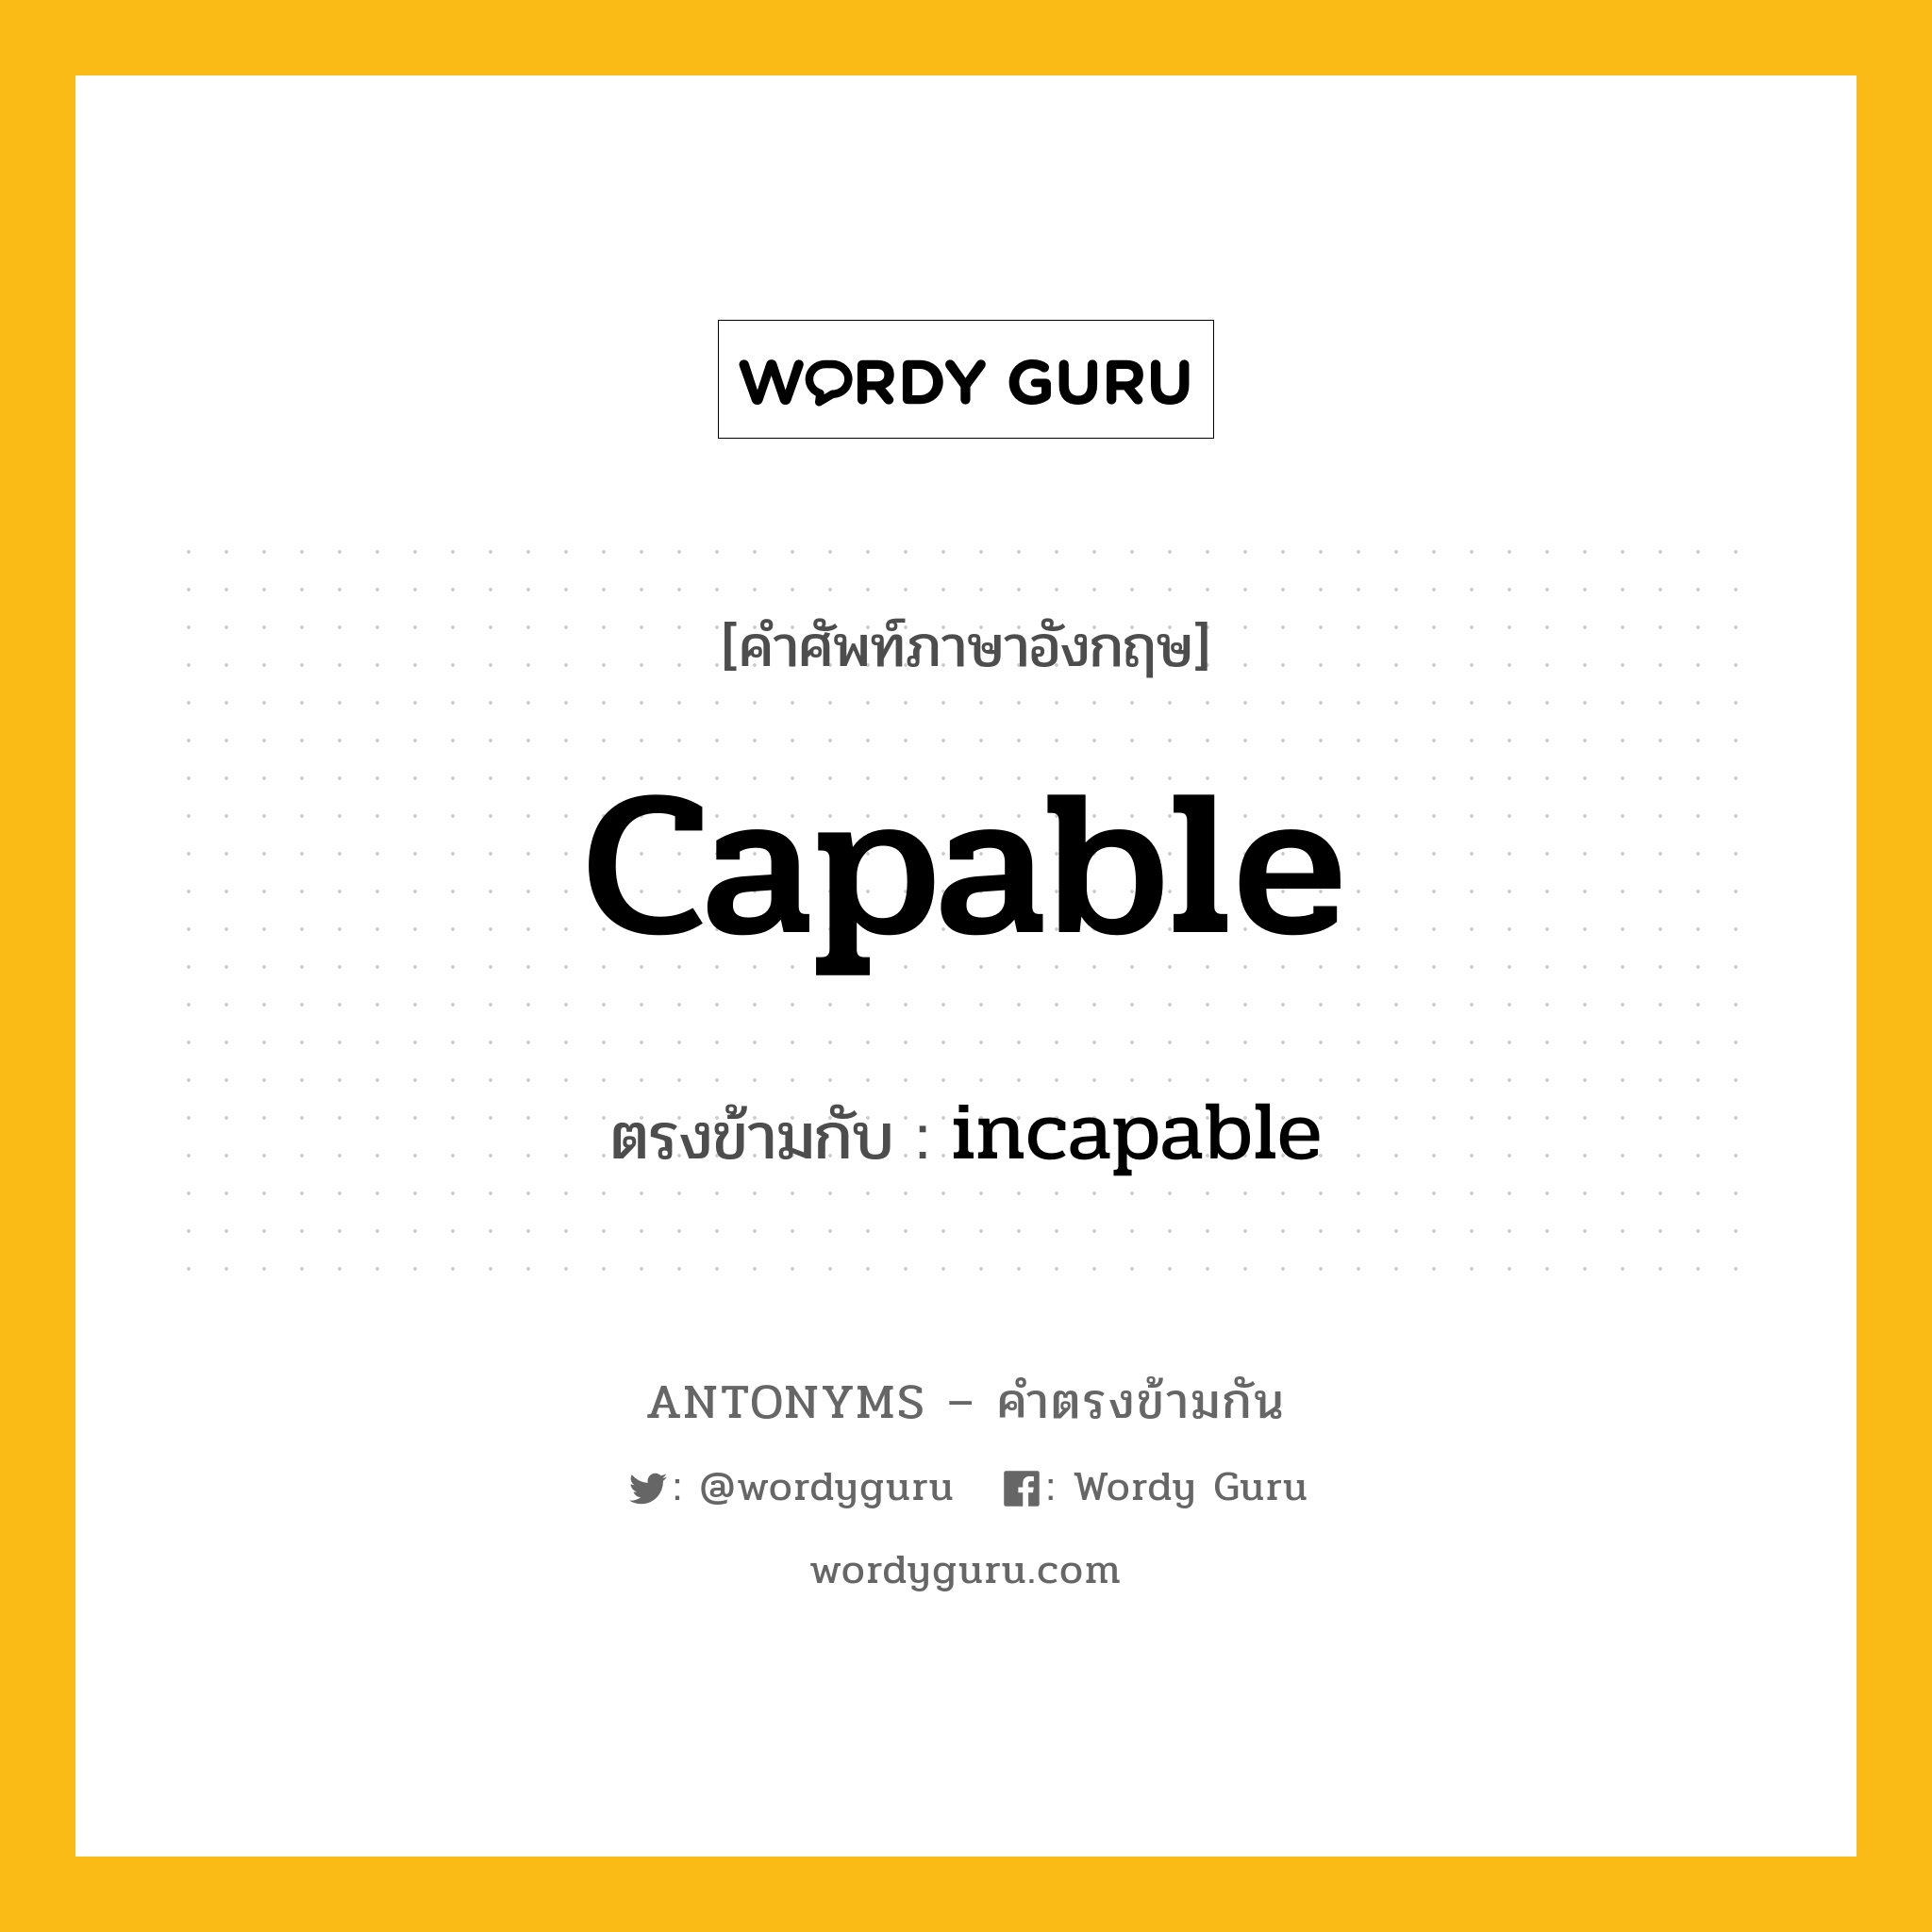 capable เป็นคำตรงข้ามกับคำไหนบ้าง?, คำศัพท์ภาษาอังกฤษ capable ตรงข้ามกับ incapable หมวด incapable